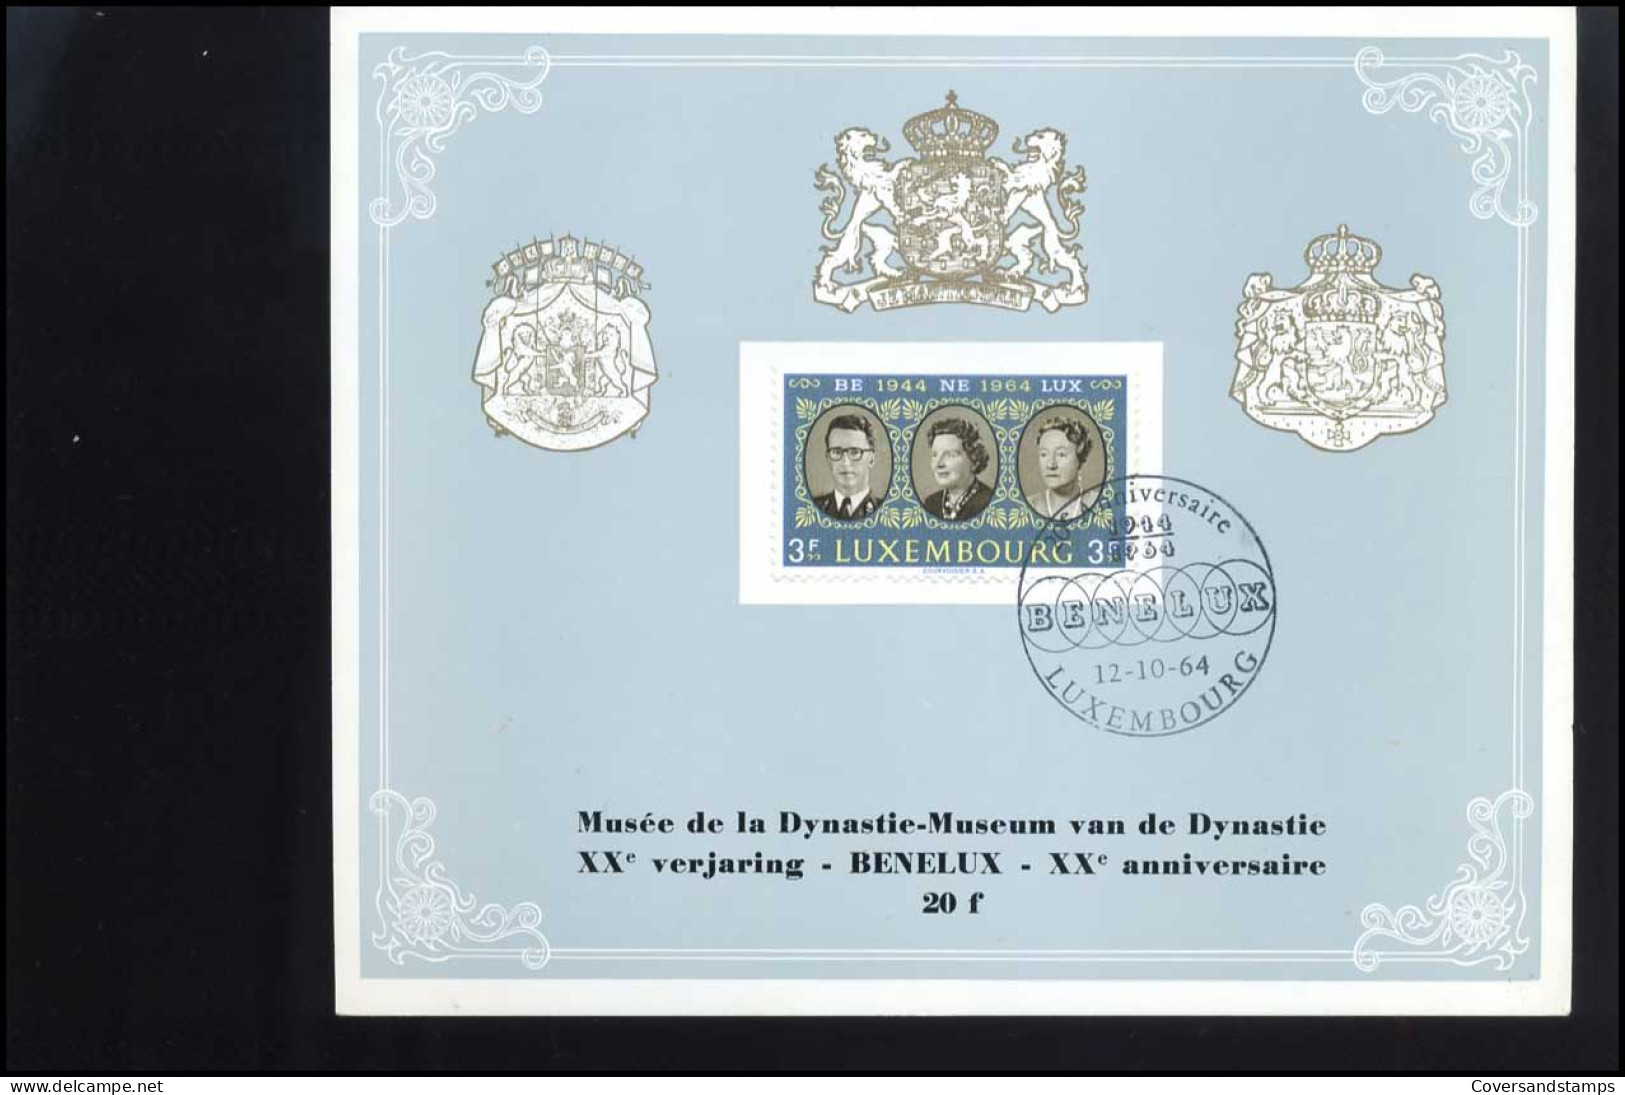 Luxemburg  - Souvenir   20 Jaar Benelux                                     - Covers & Documents